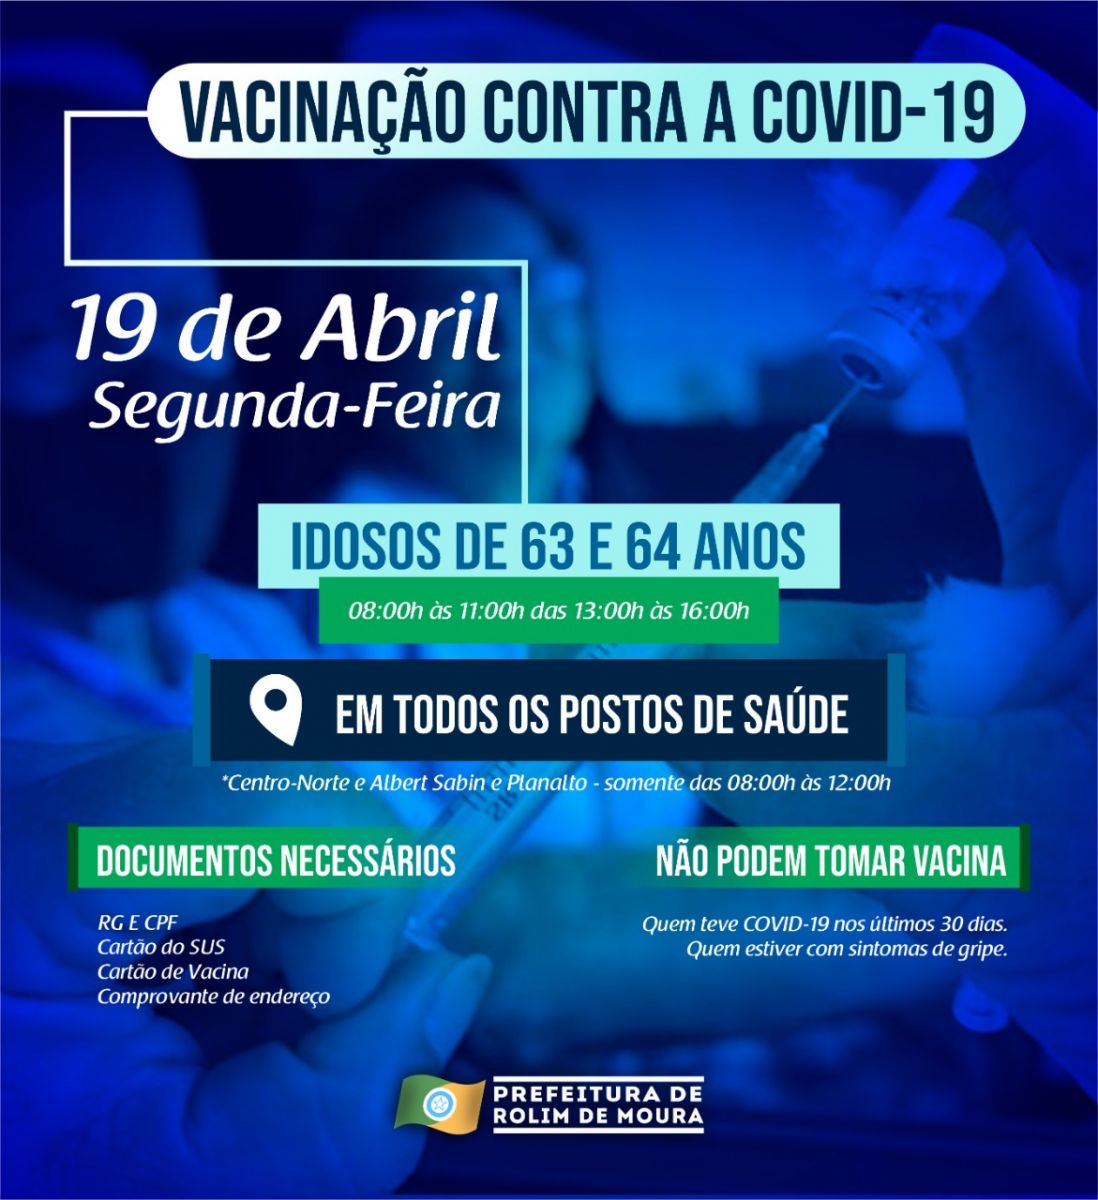 Idosos de 63 e 64 anos serão vacinados segunda-feira (19) - News Rondônia